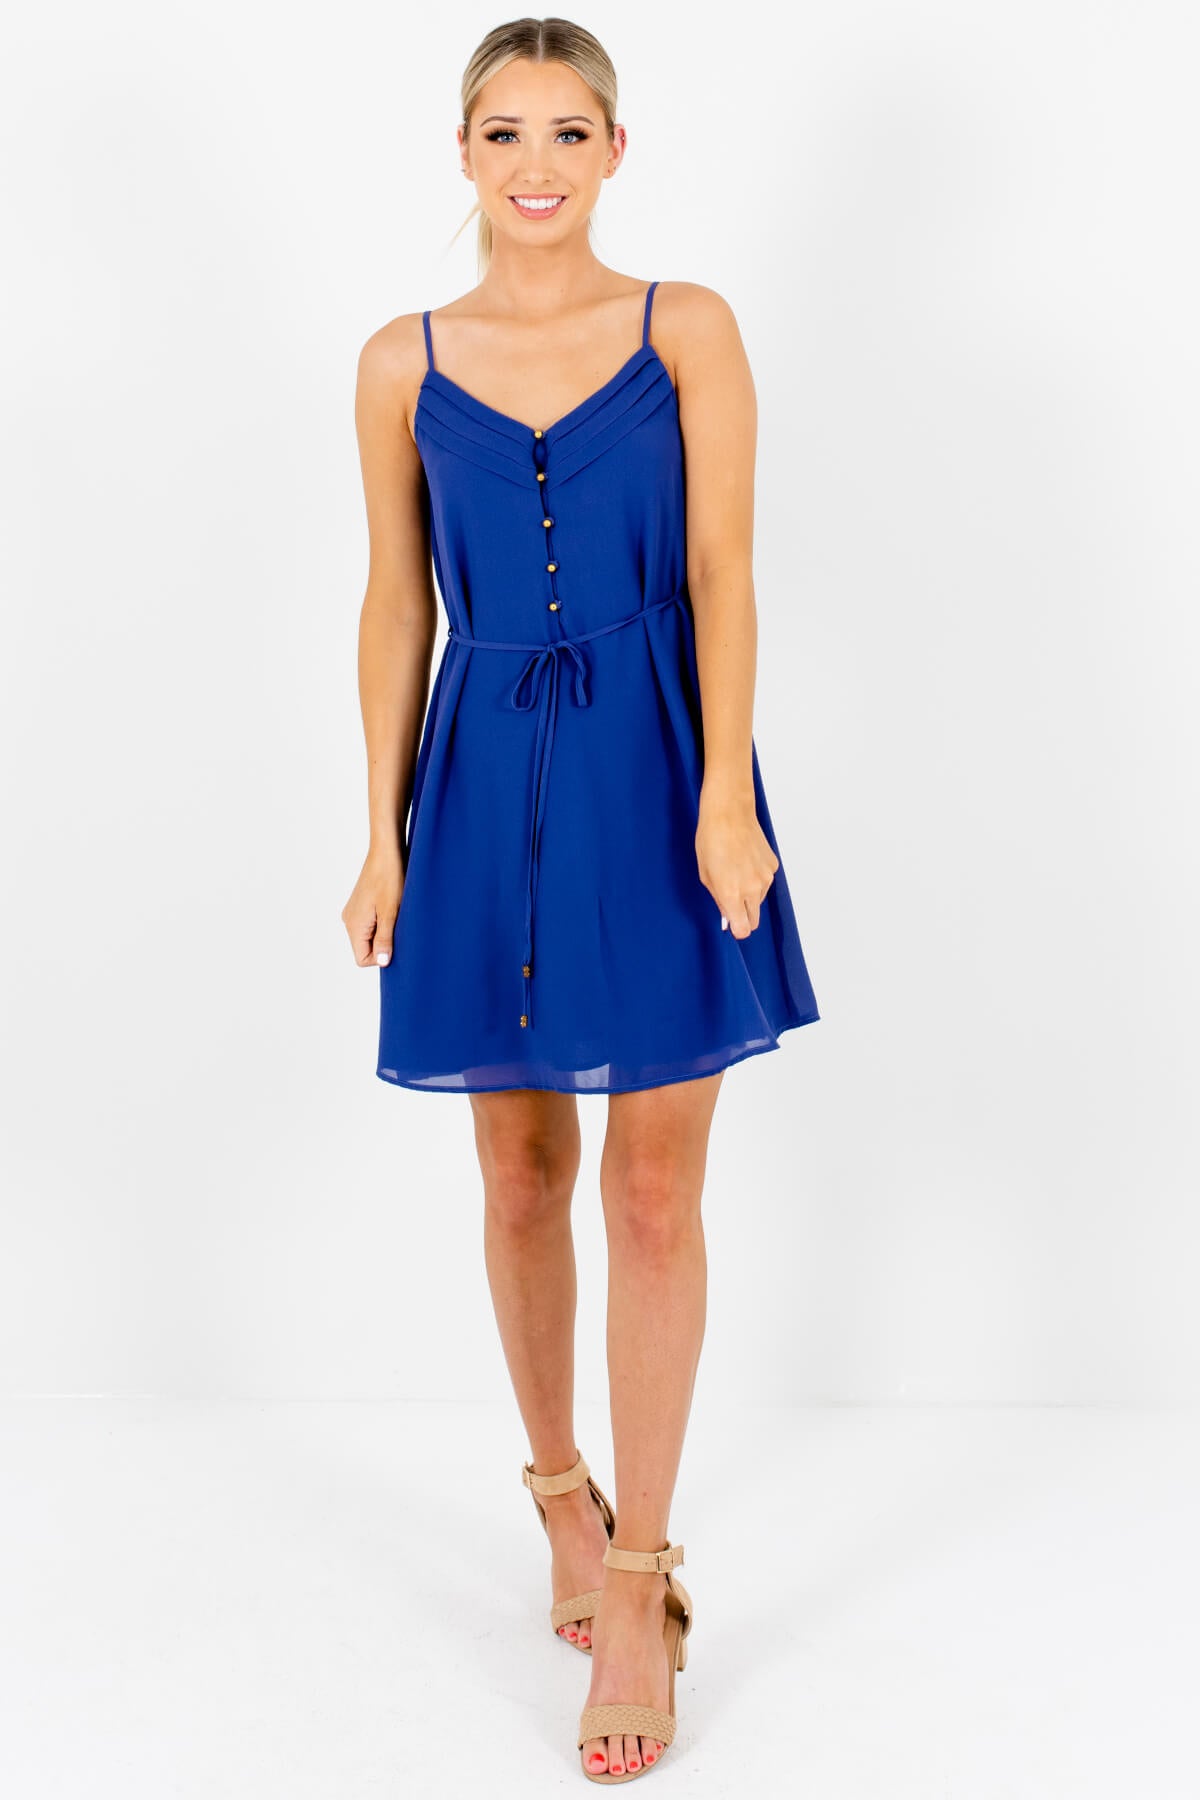 Dark Periwinkle Blue Boutique Mini Dresses for Women